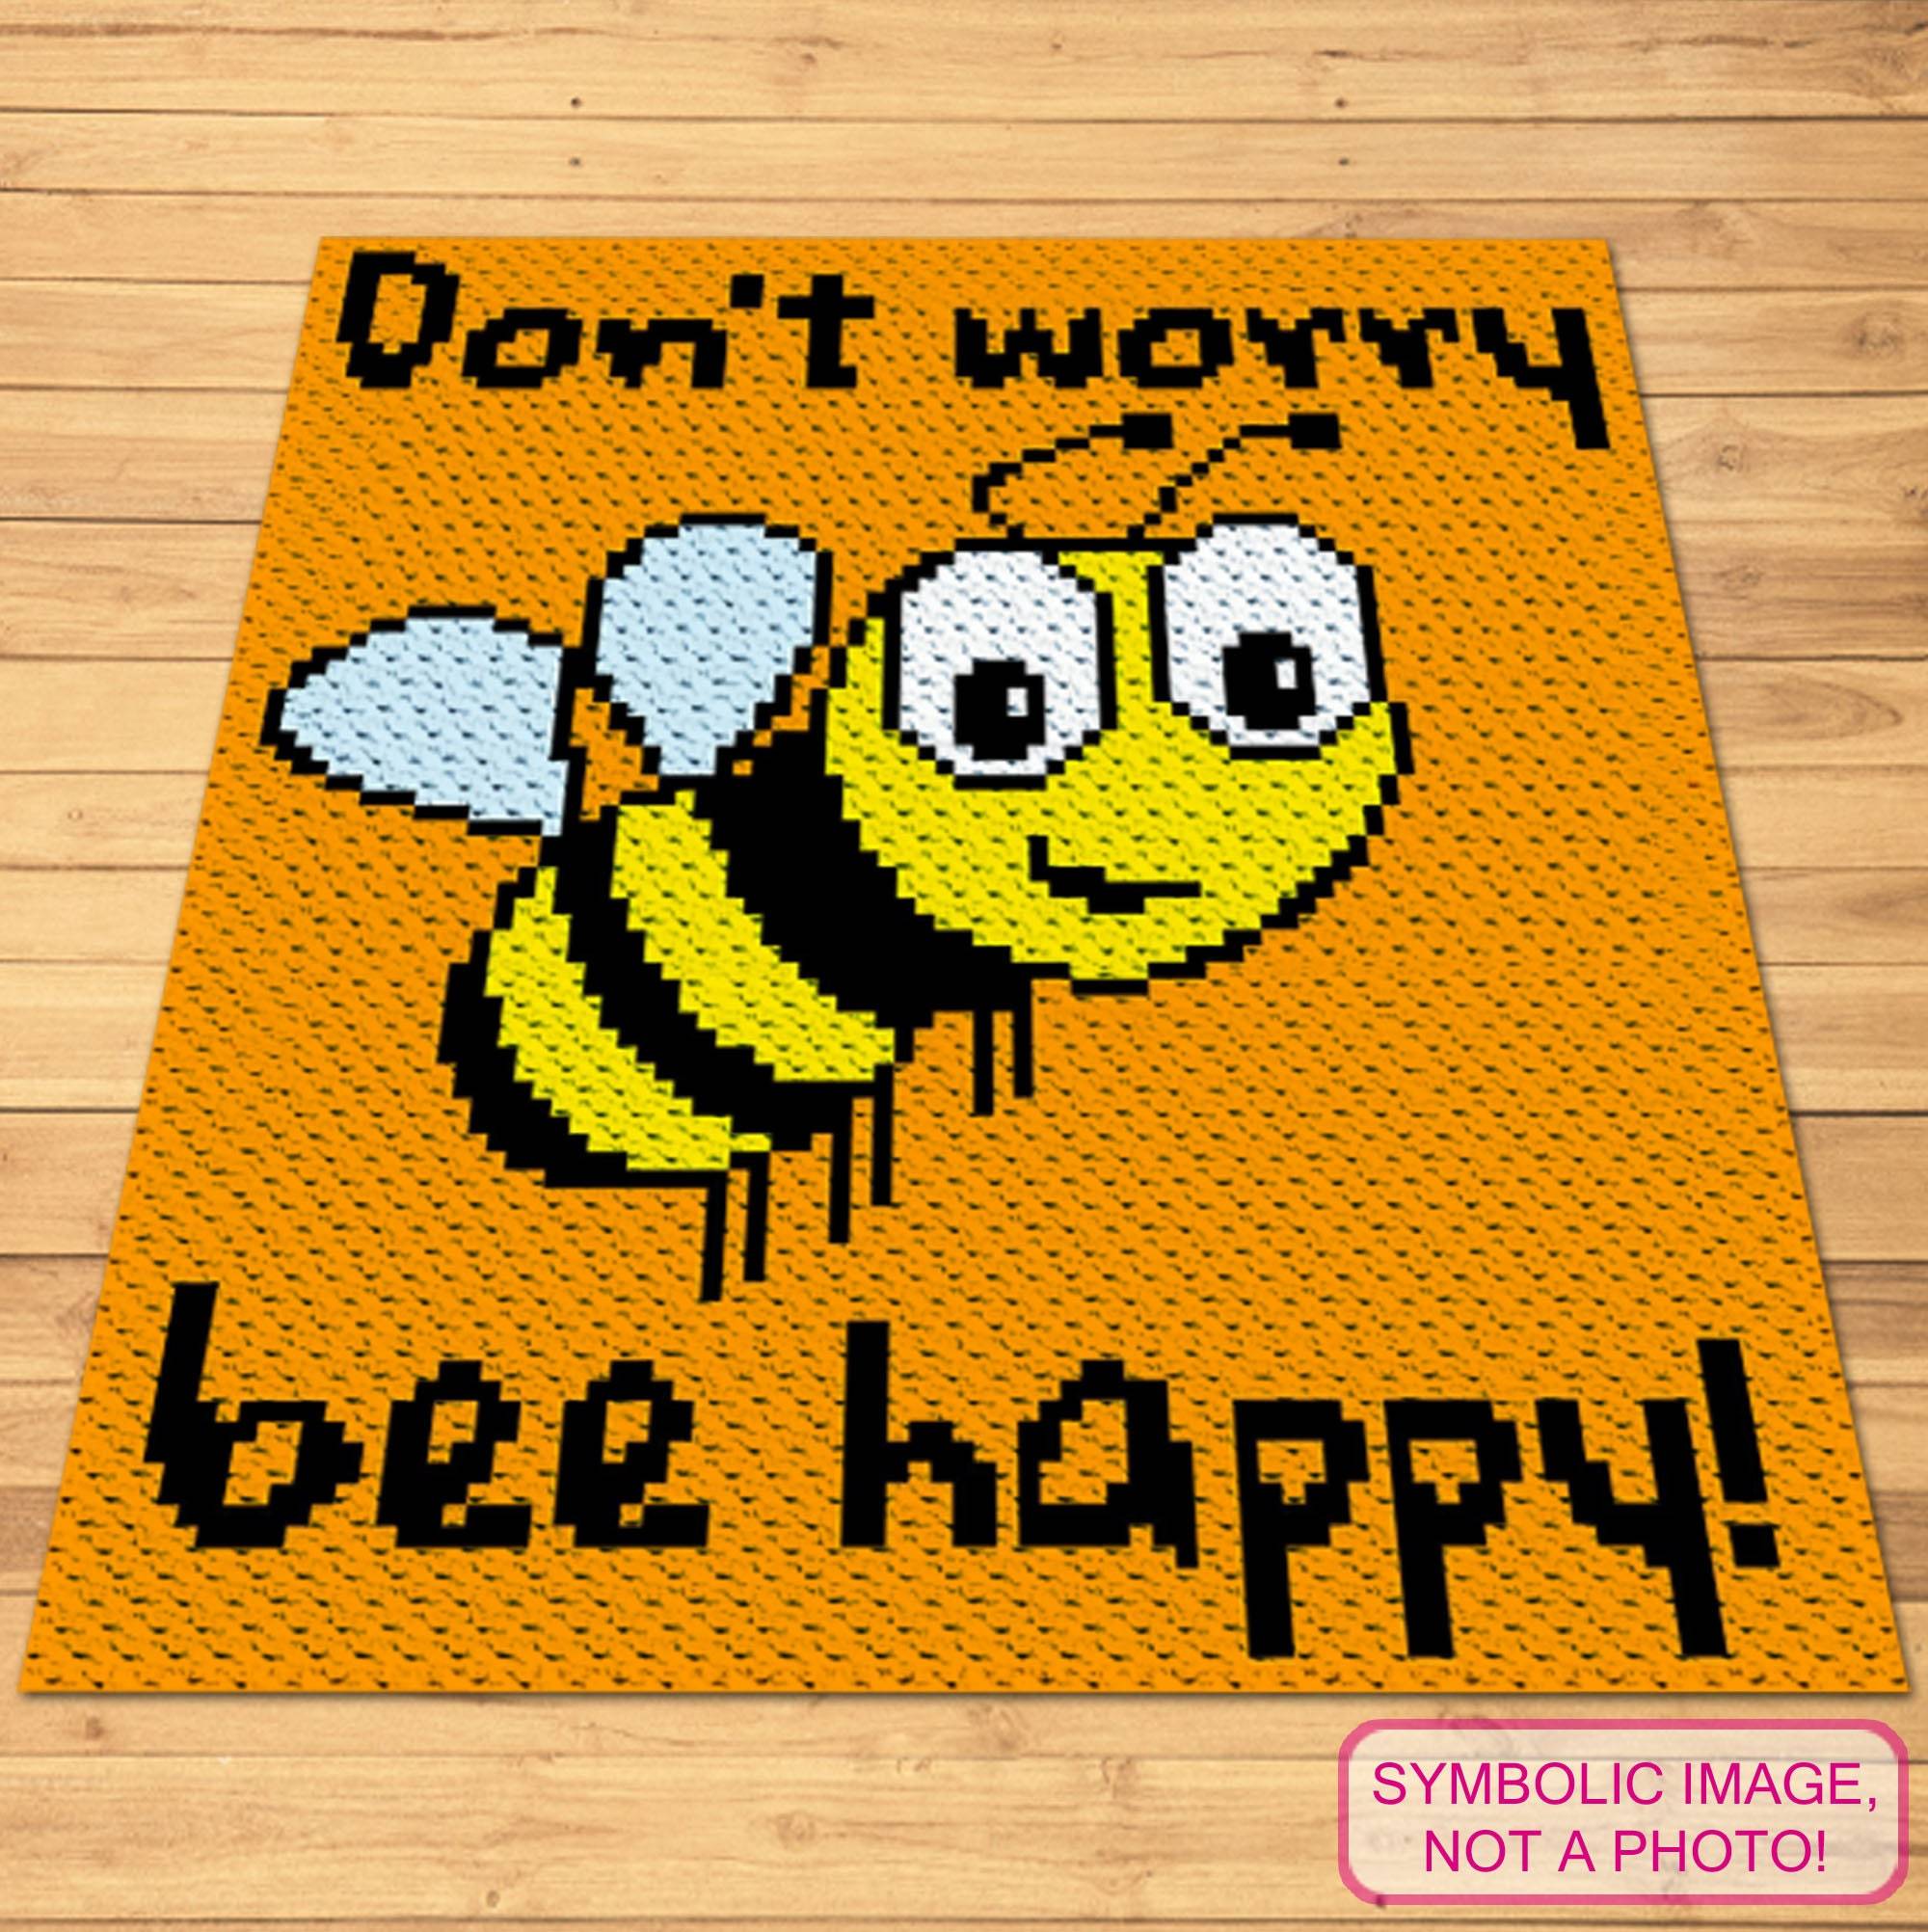 C2C Crochet Bee Pattern - Bee Happy